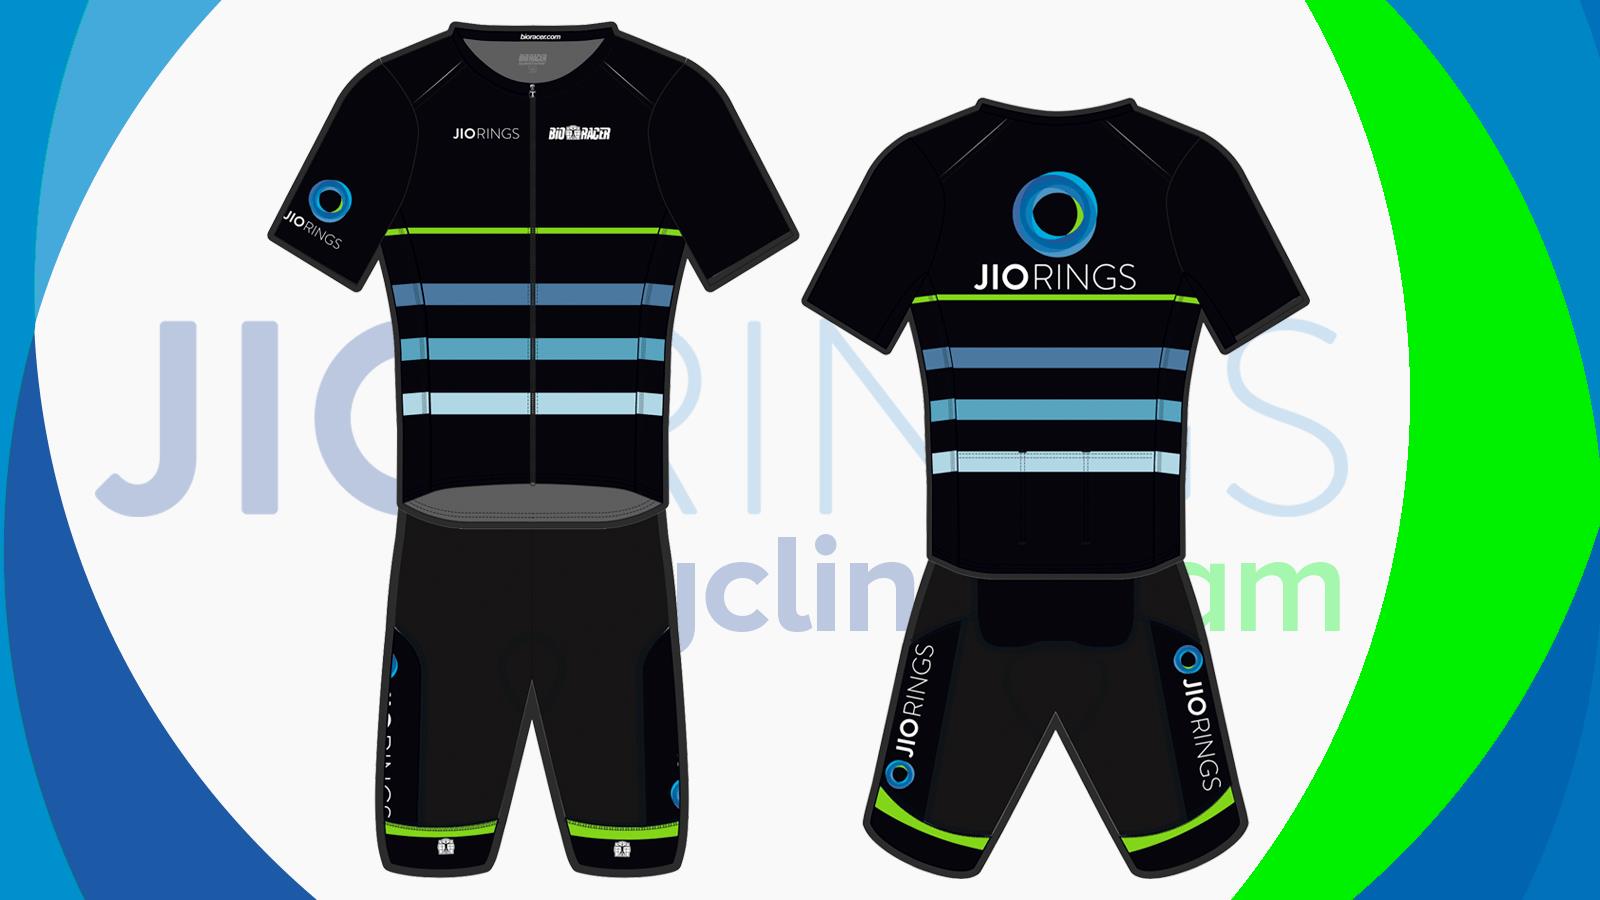 JIOrings Cycling Team lanza nueva equipación para una nueva etapa